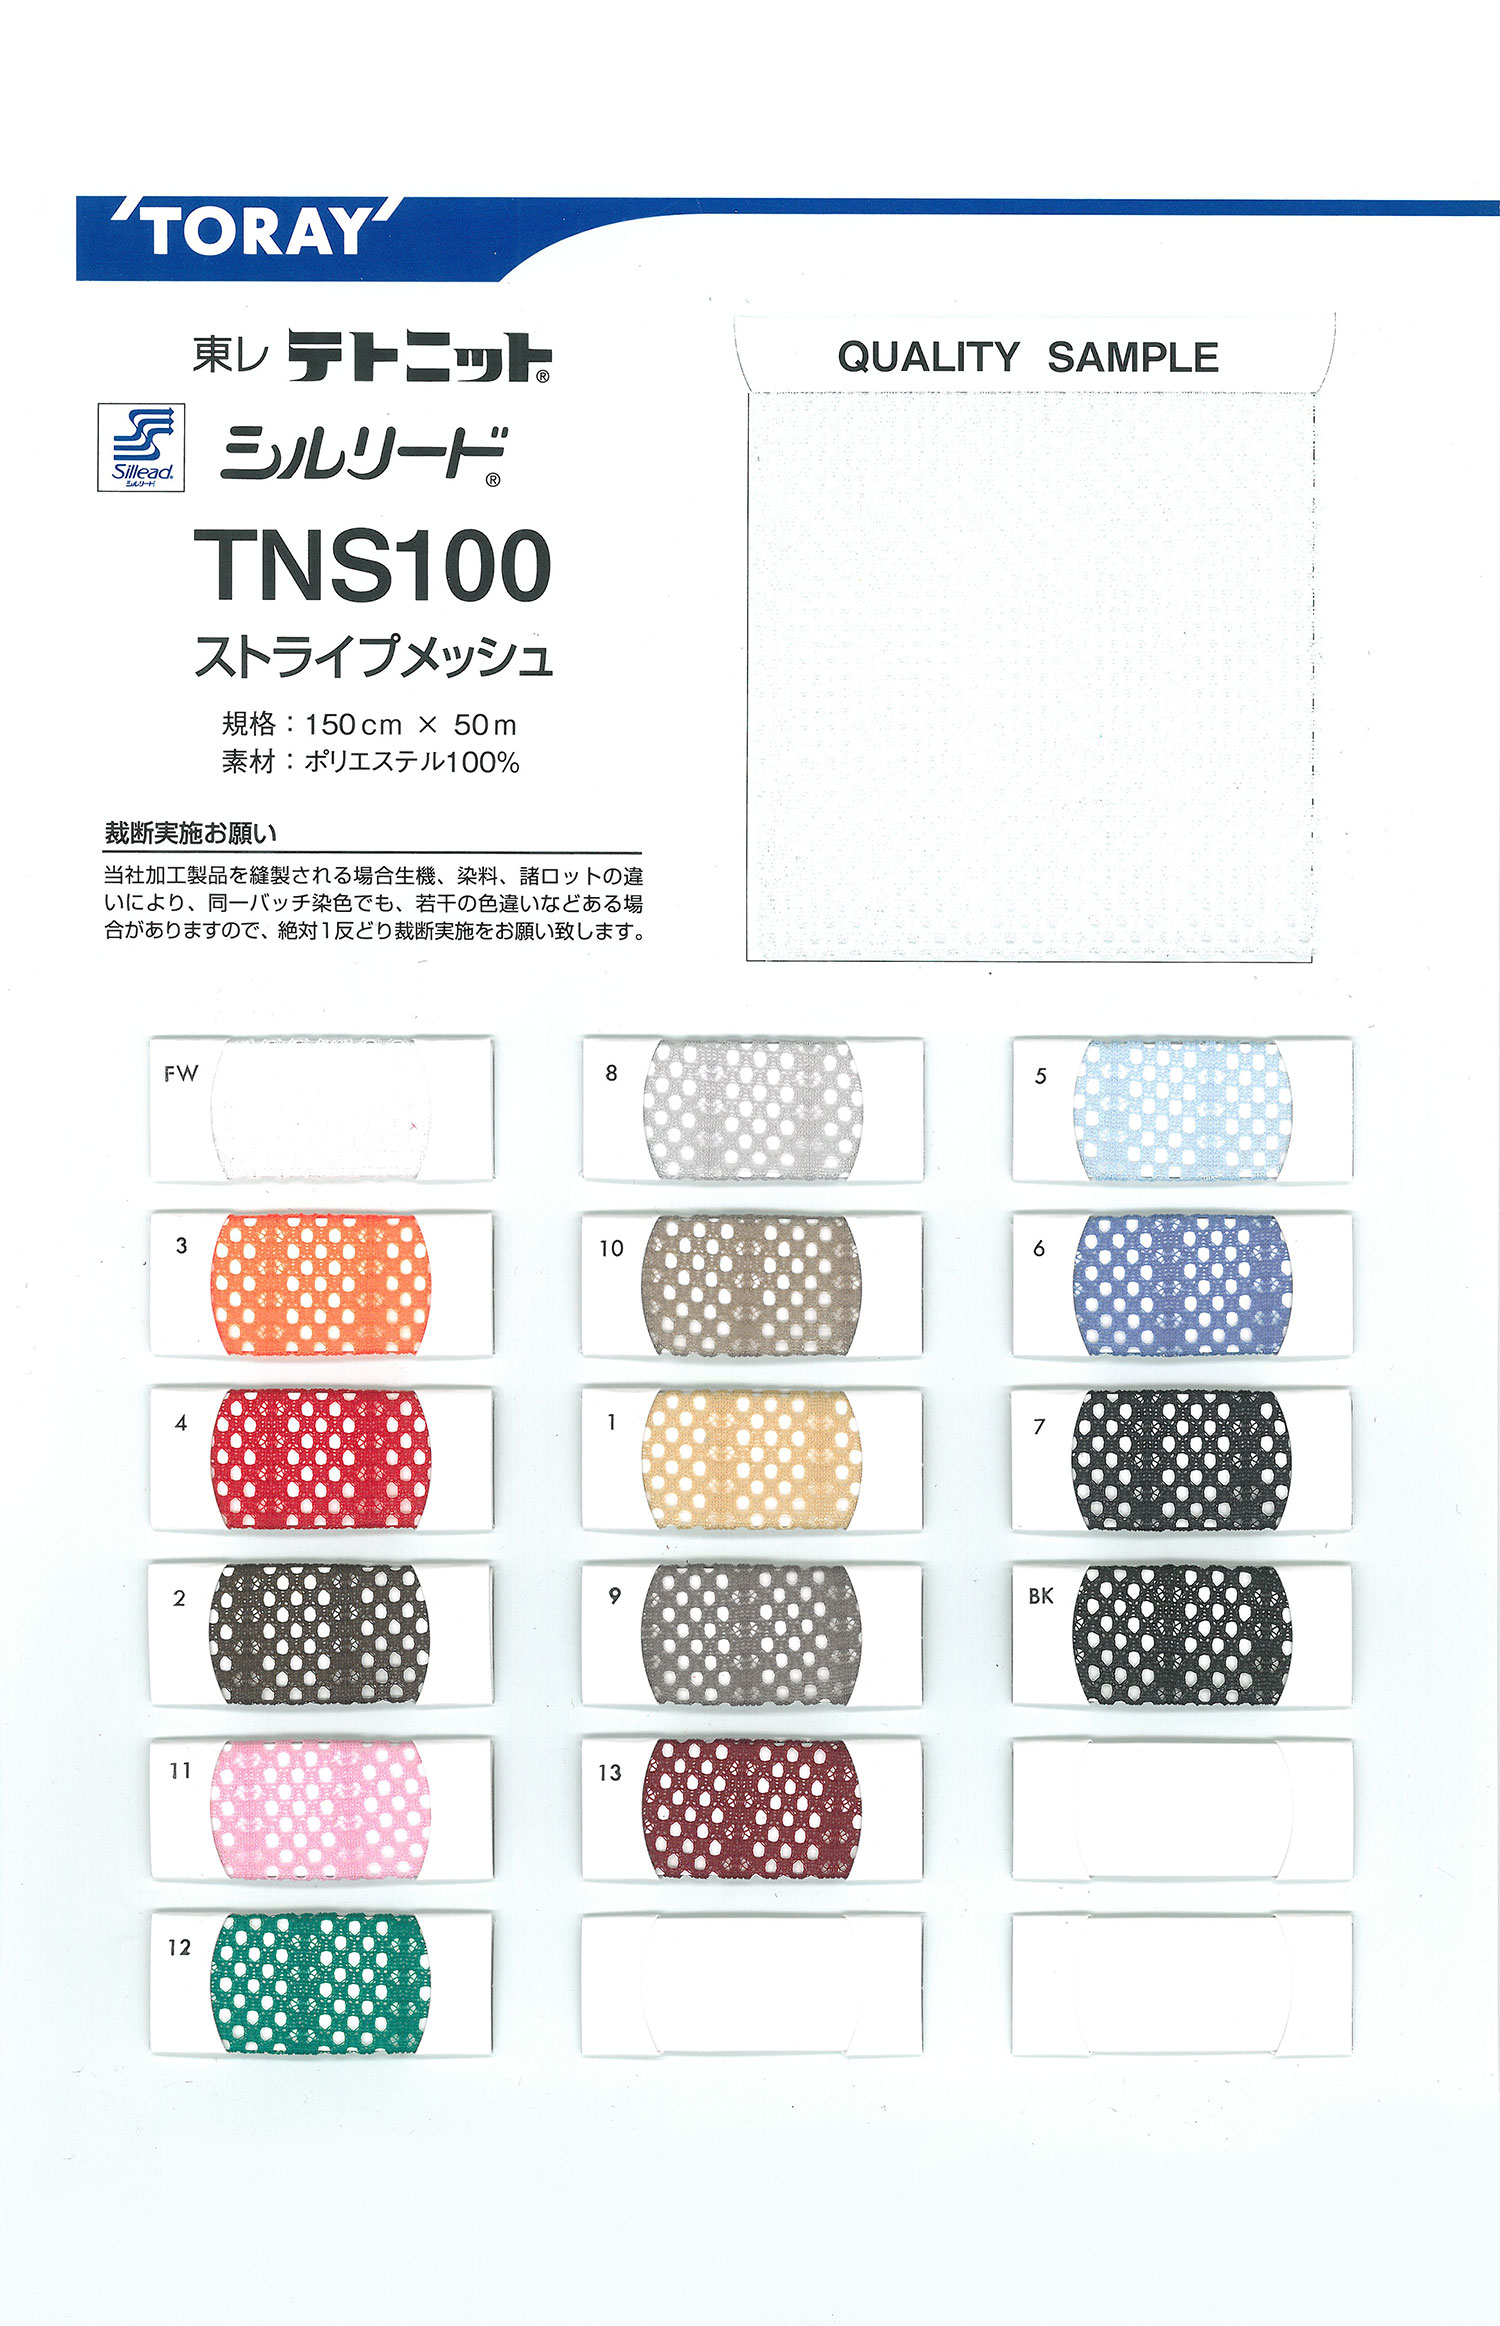 TNS100 Vải Lưới Kẻ Sọc Sillead TNS100[Vải Lót] TORAY